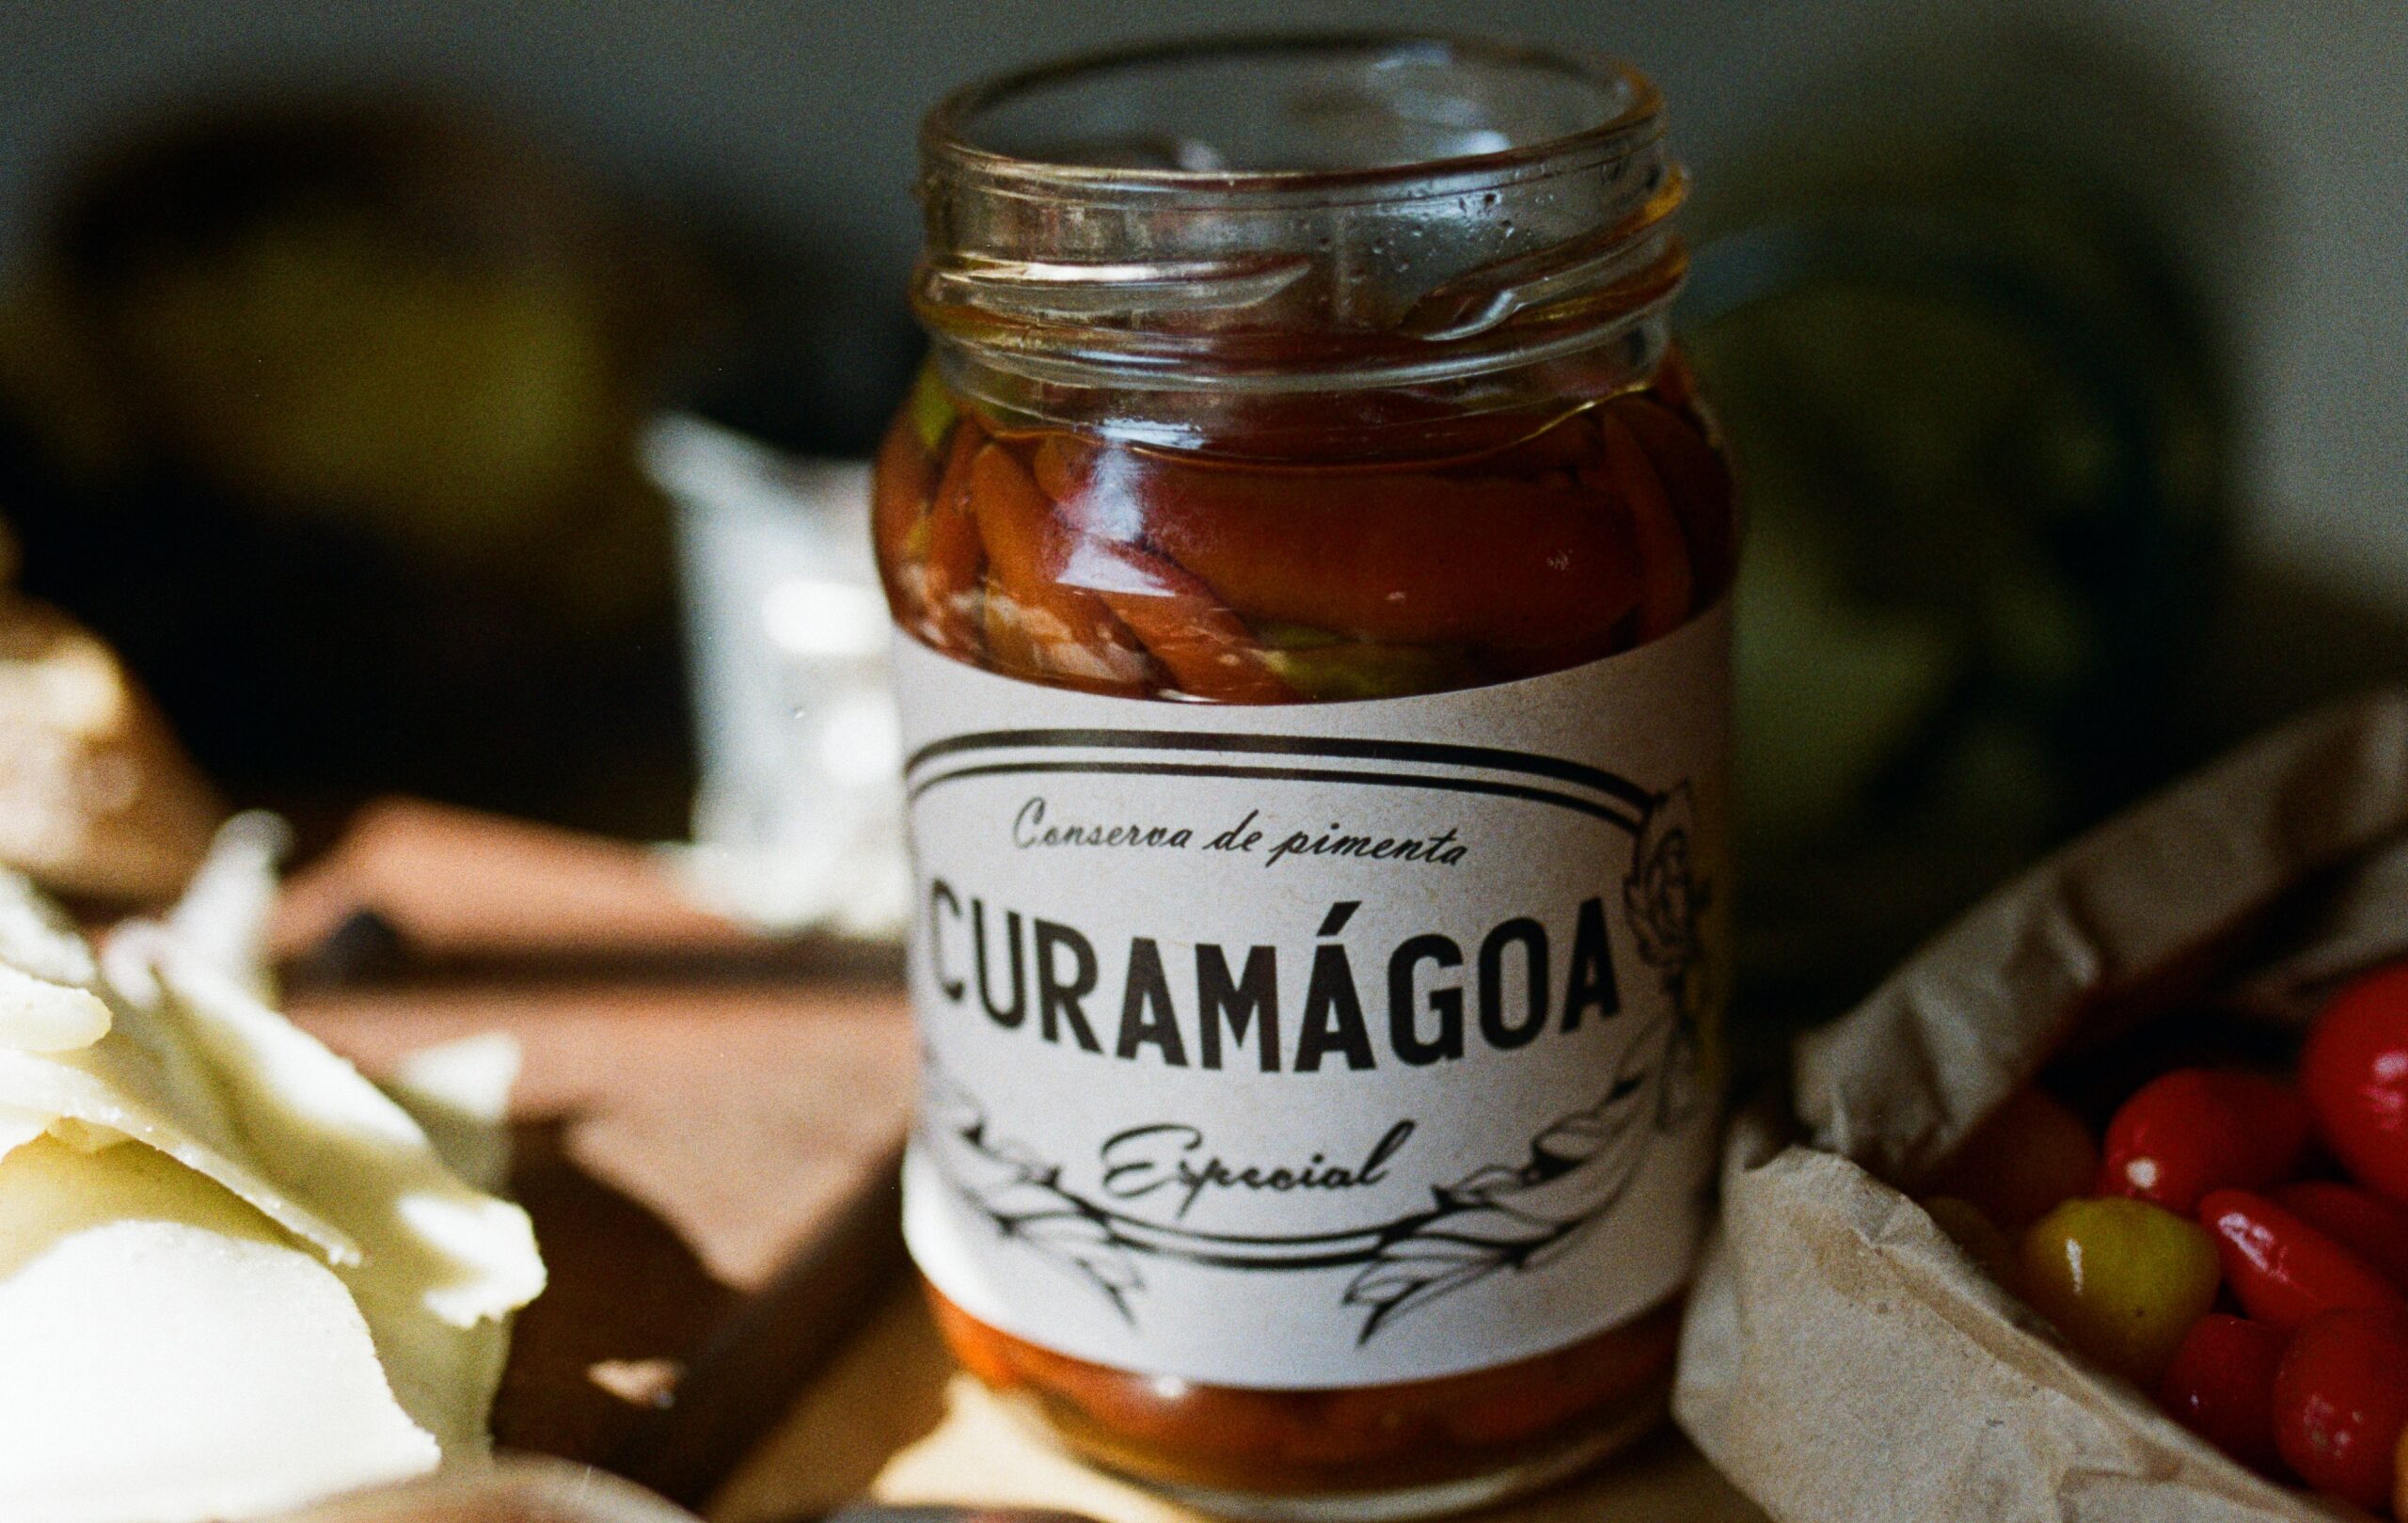 Curamágoa quer provocar aquela sensação de “quentinho no peito” com suas conservas de pimenta, molhos pesto e chimichurri